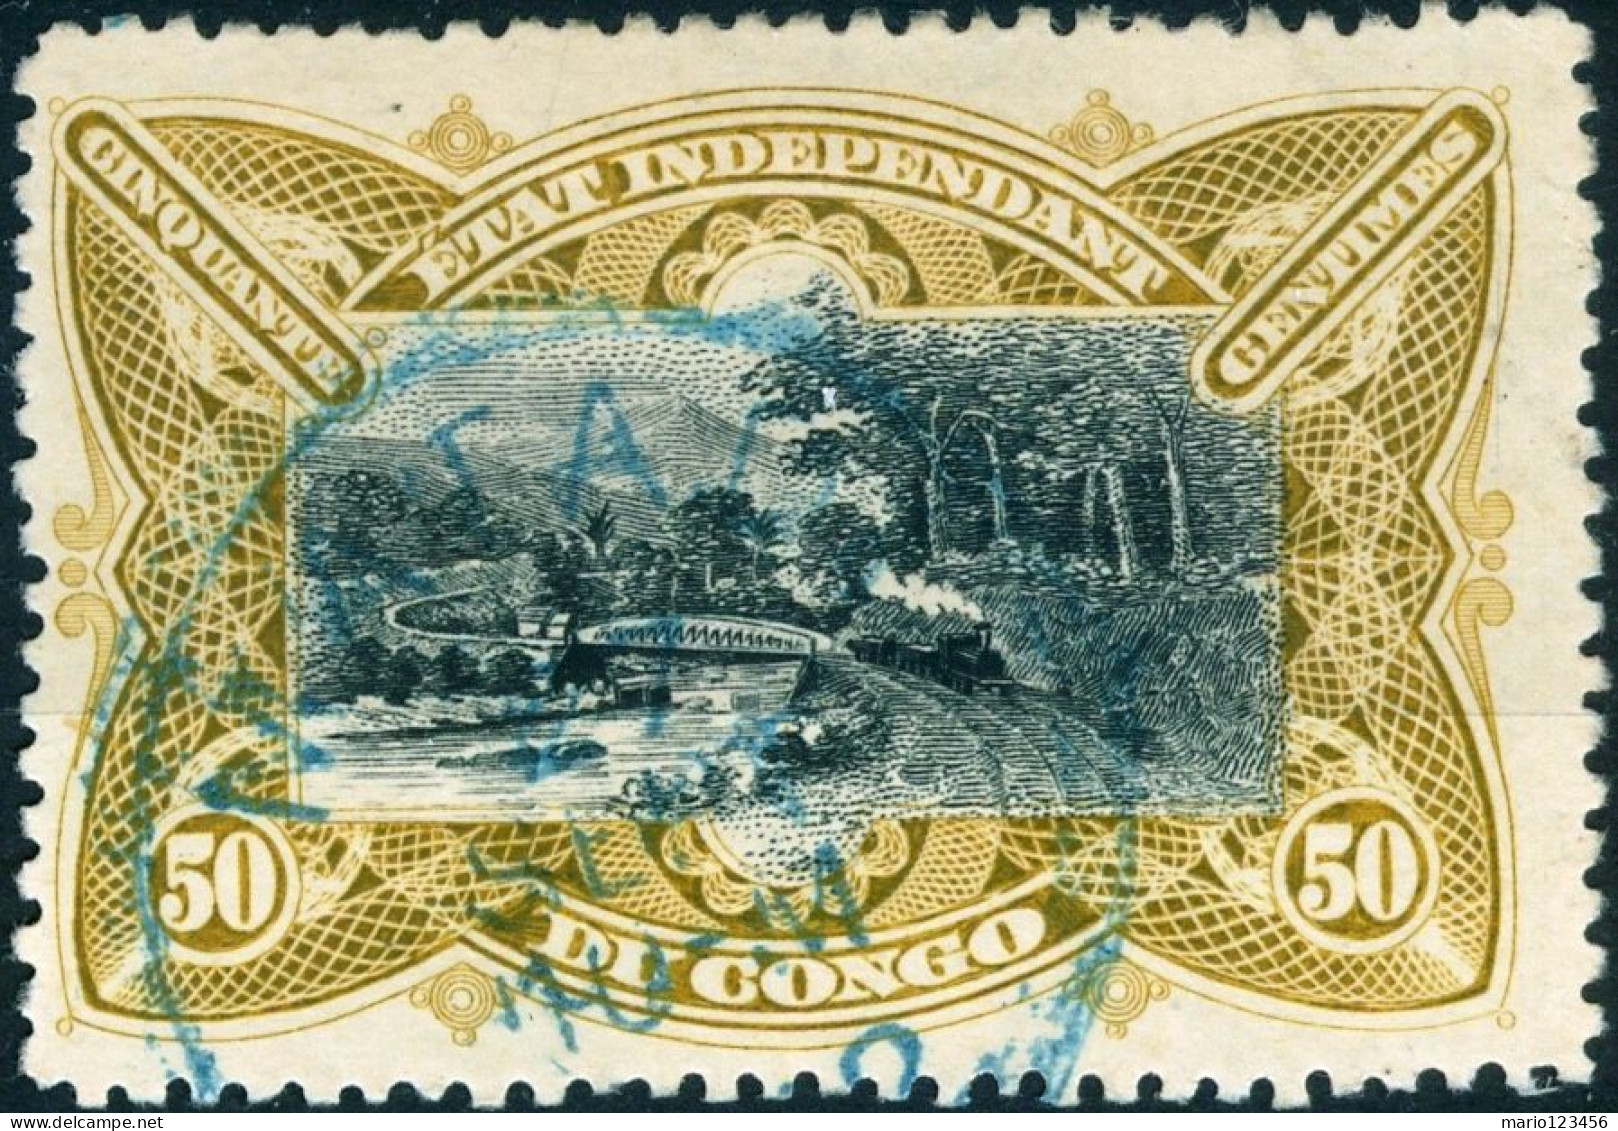 CONGO BELGA, BELGIAN CONGO, STATO LIBERO DEL CONGO, PAESAGGI, LANDSCAPE, 1900, 50 C.,USATI Mi:CD-FS 29, Scott:CD-FS 23, - Used Stamps